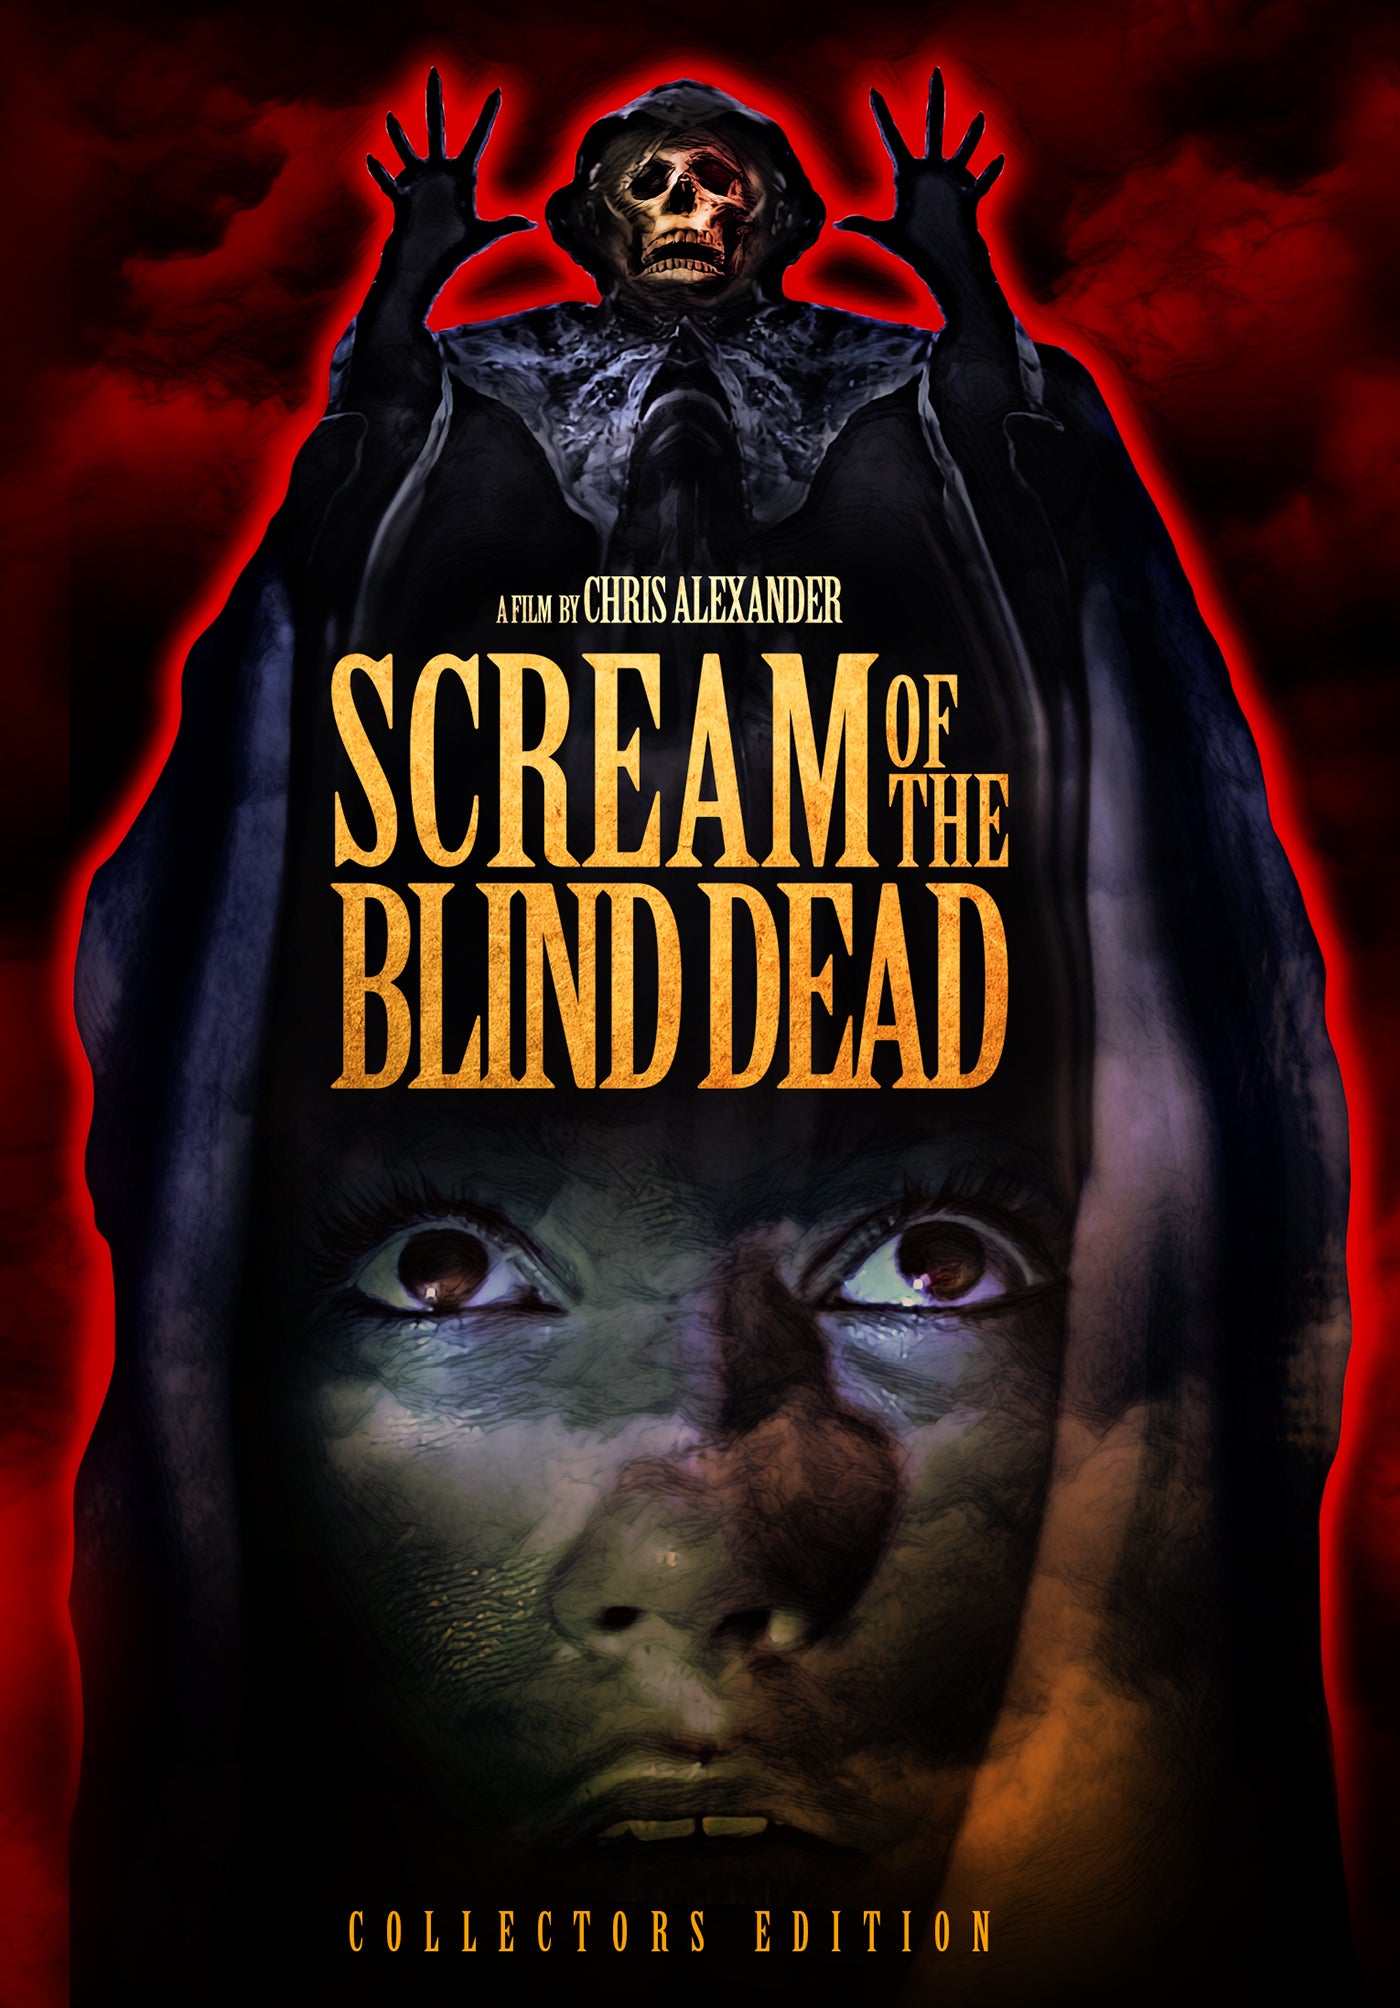 SCREAM OF THE BLIND DEAD DVD